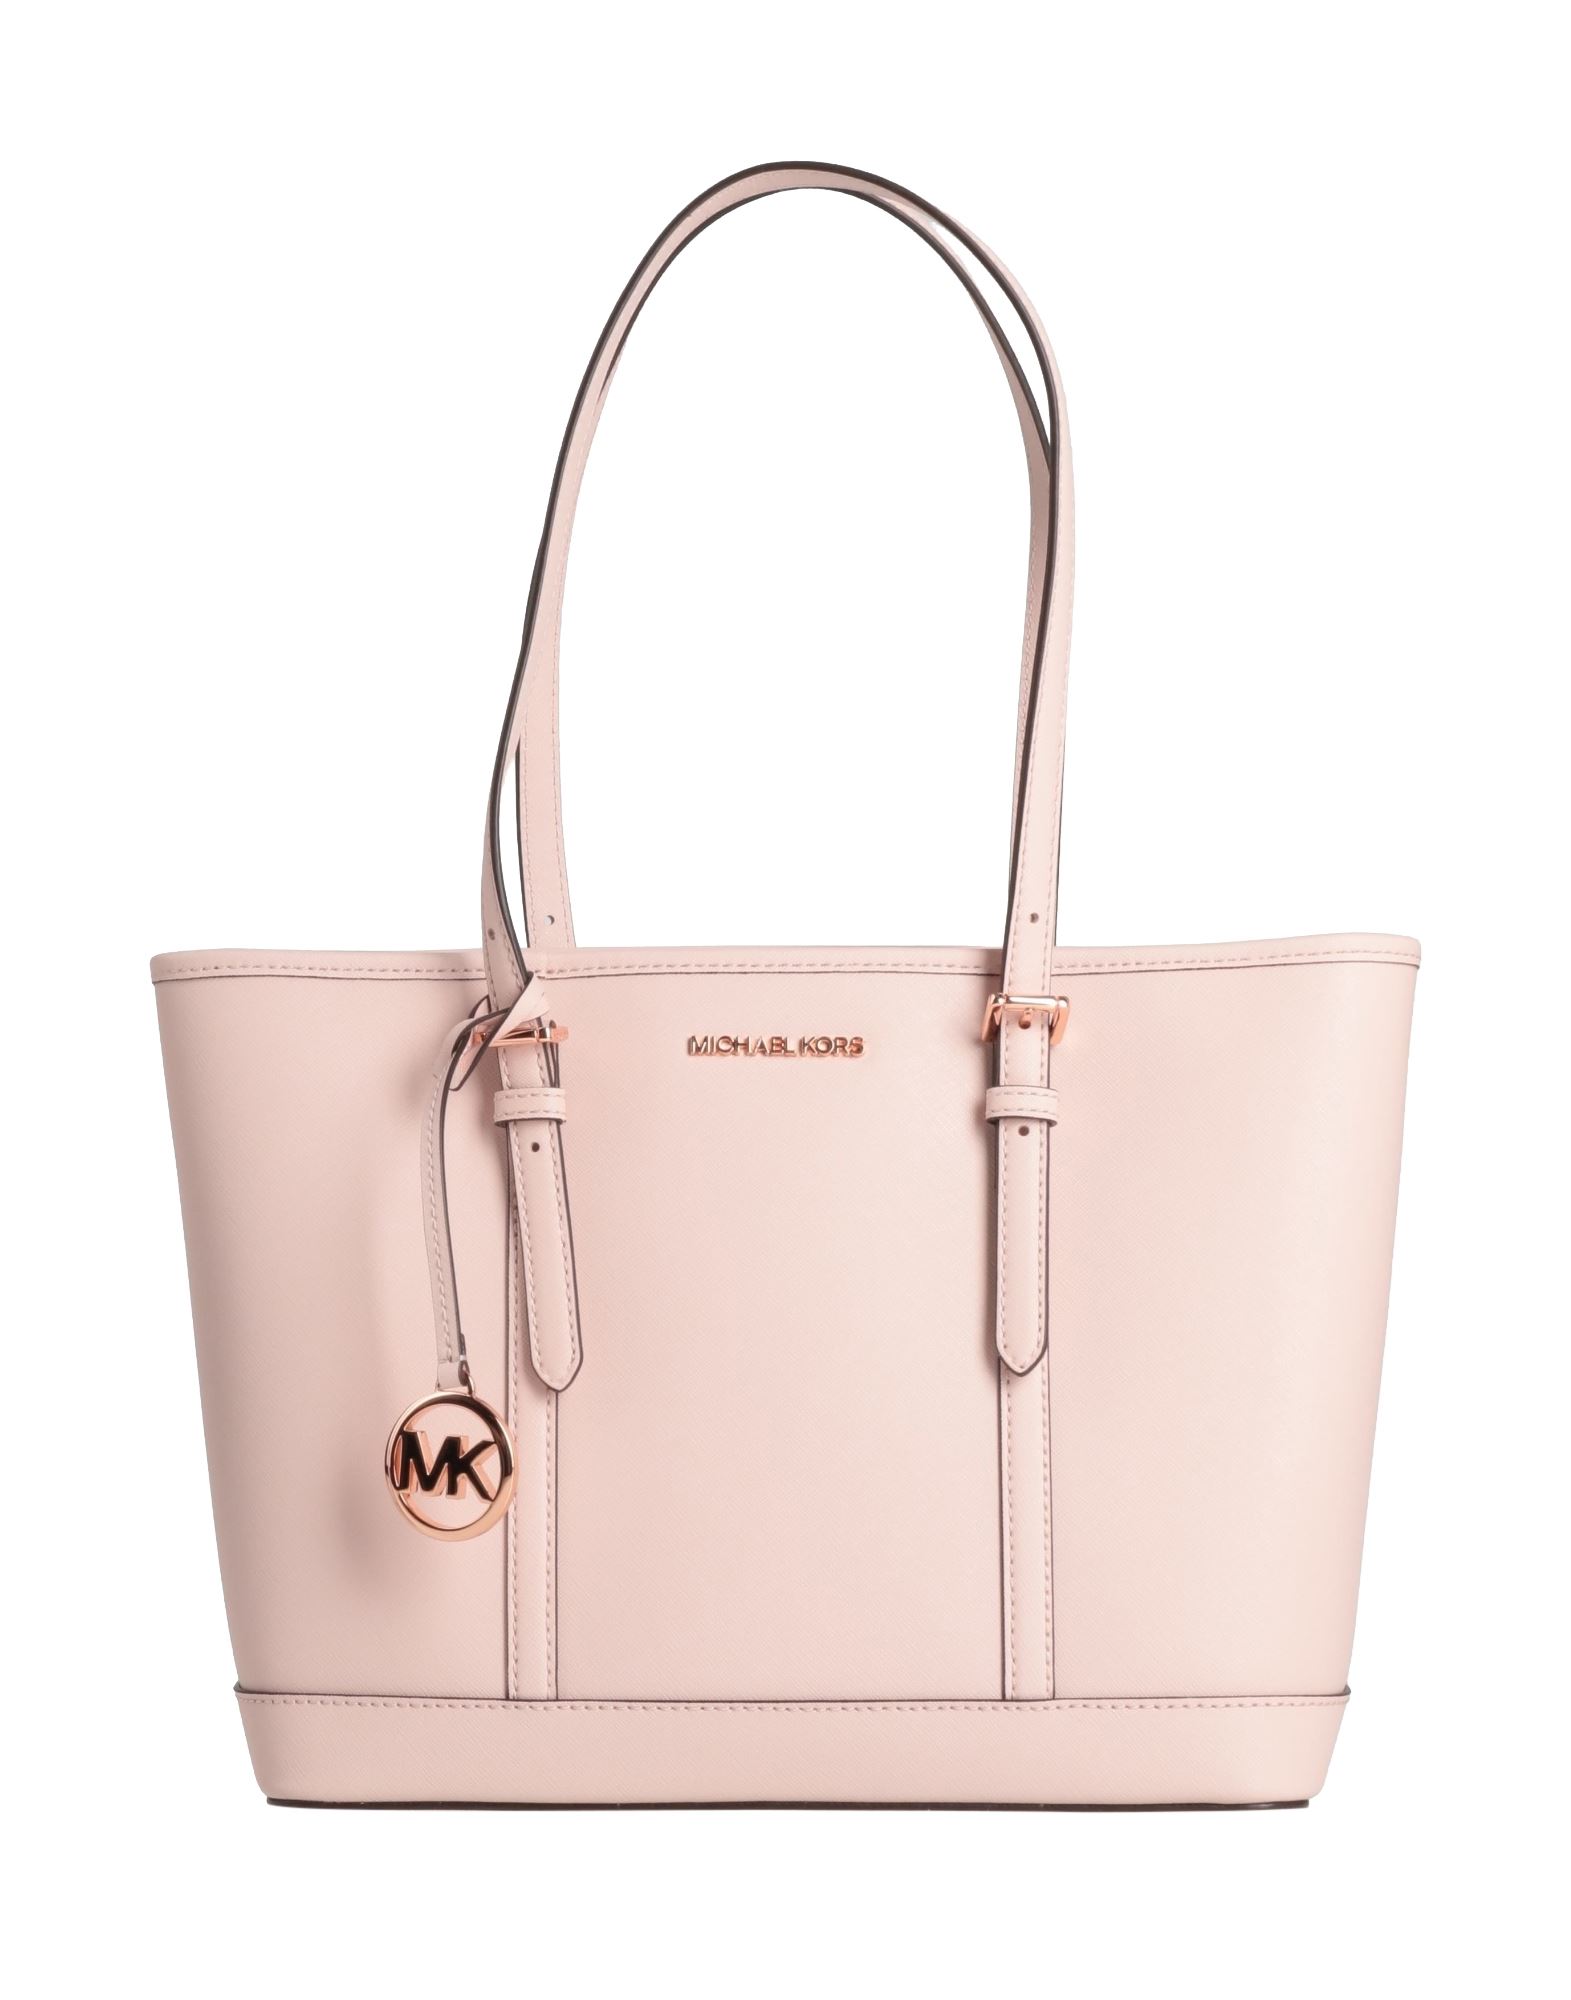 Michael Michael Kors Handbags In Pink